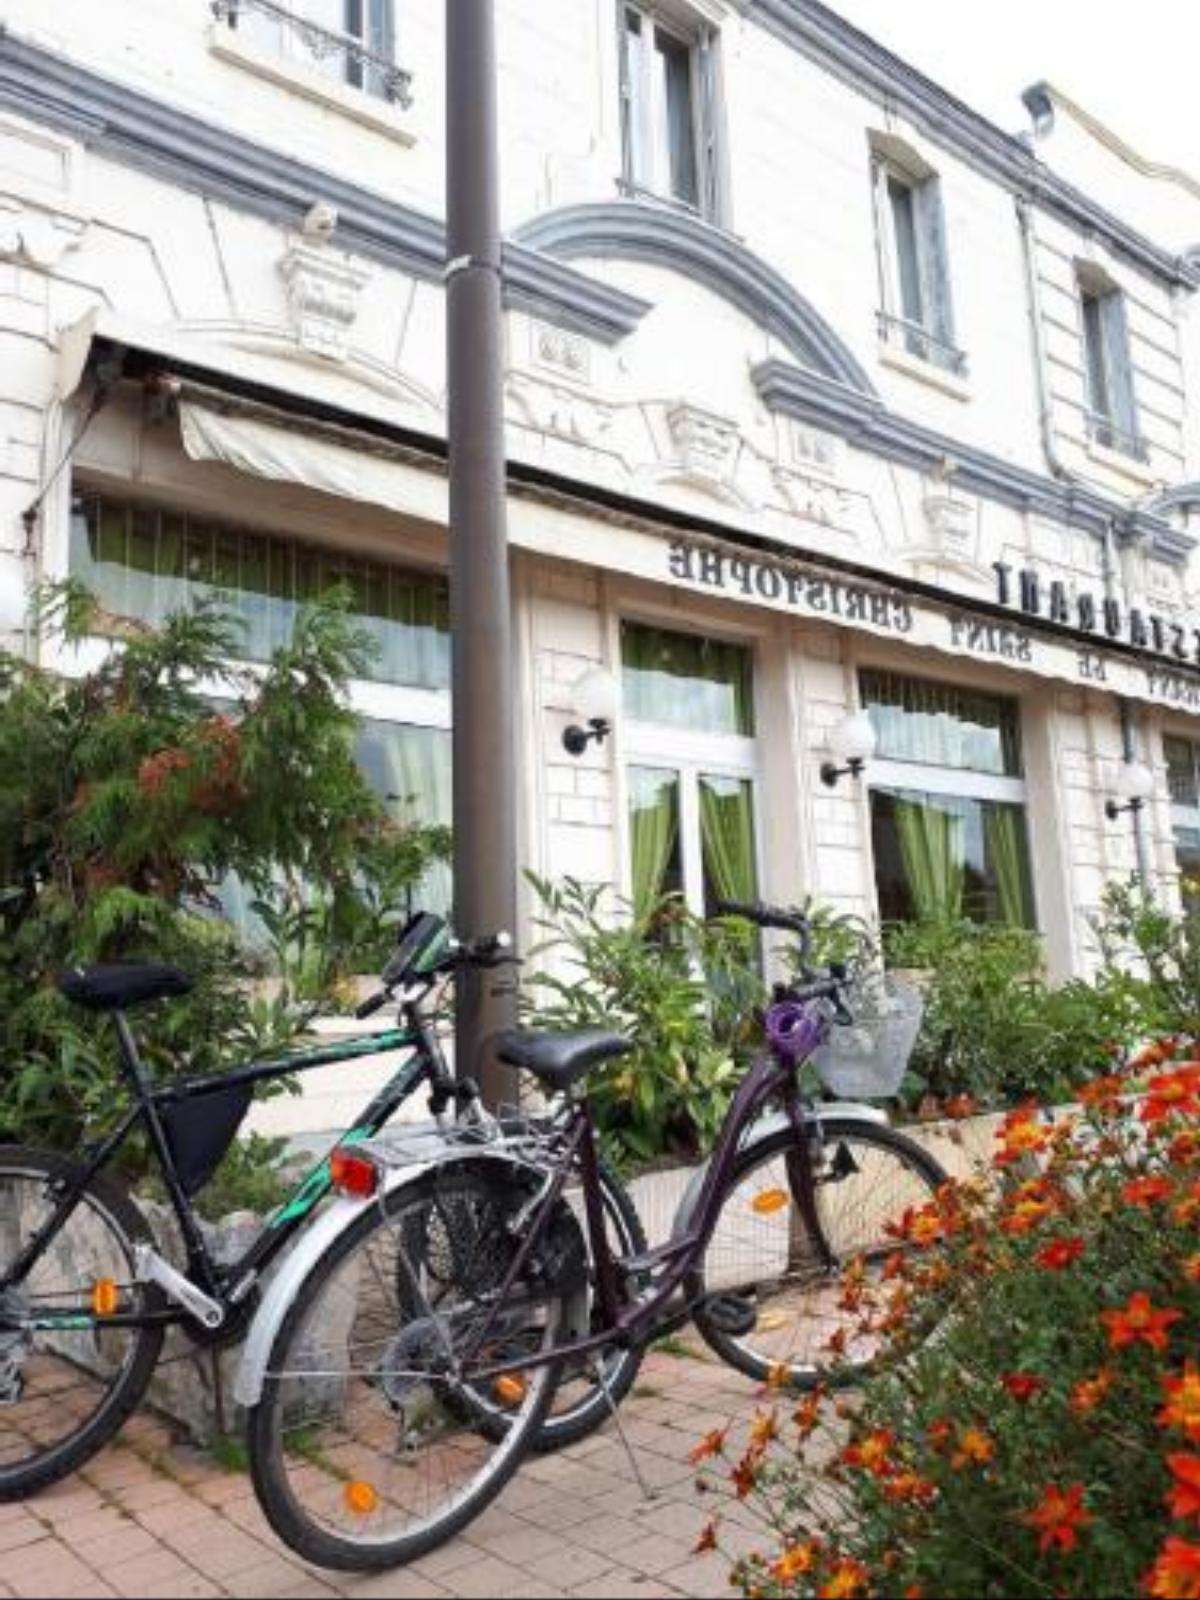 Le Saint Christophe Hotel Cosne Cours sur Loire France